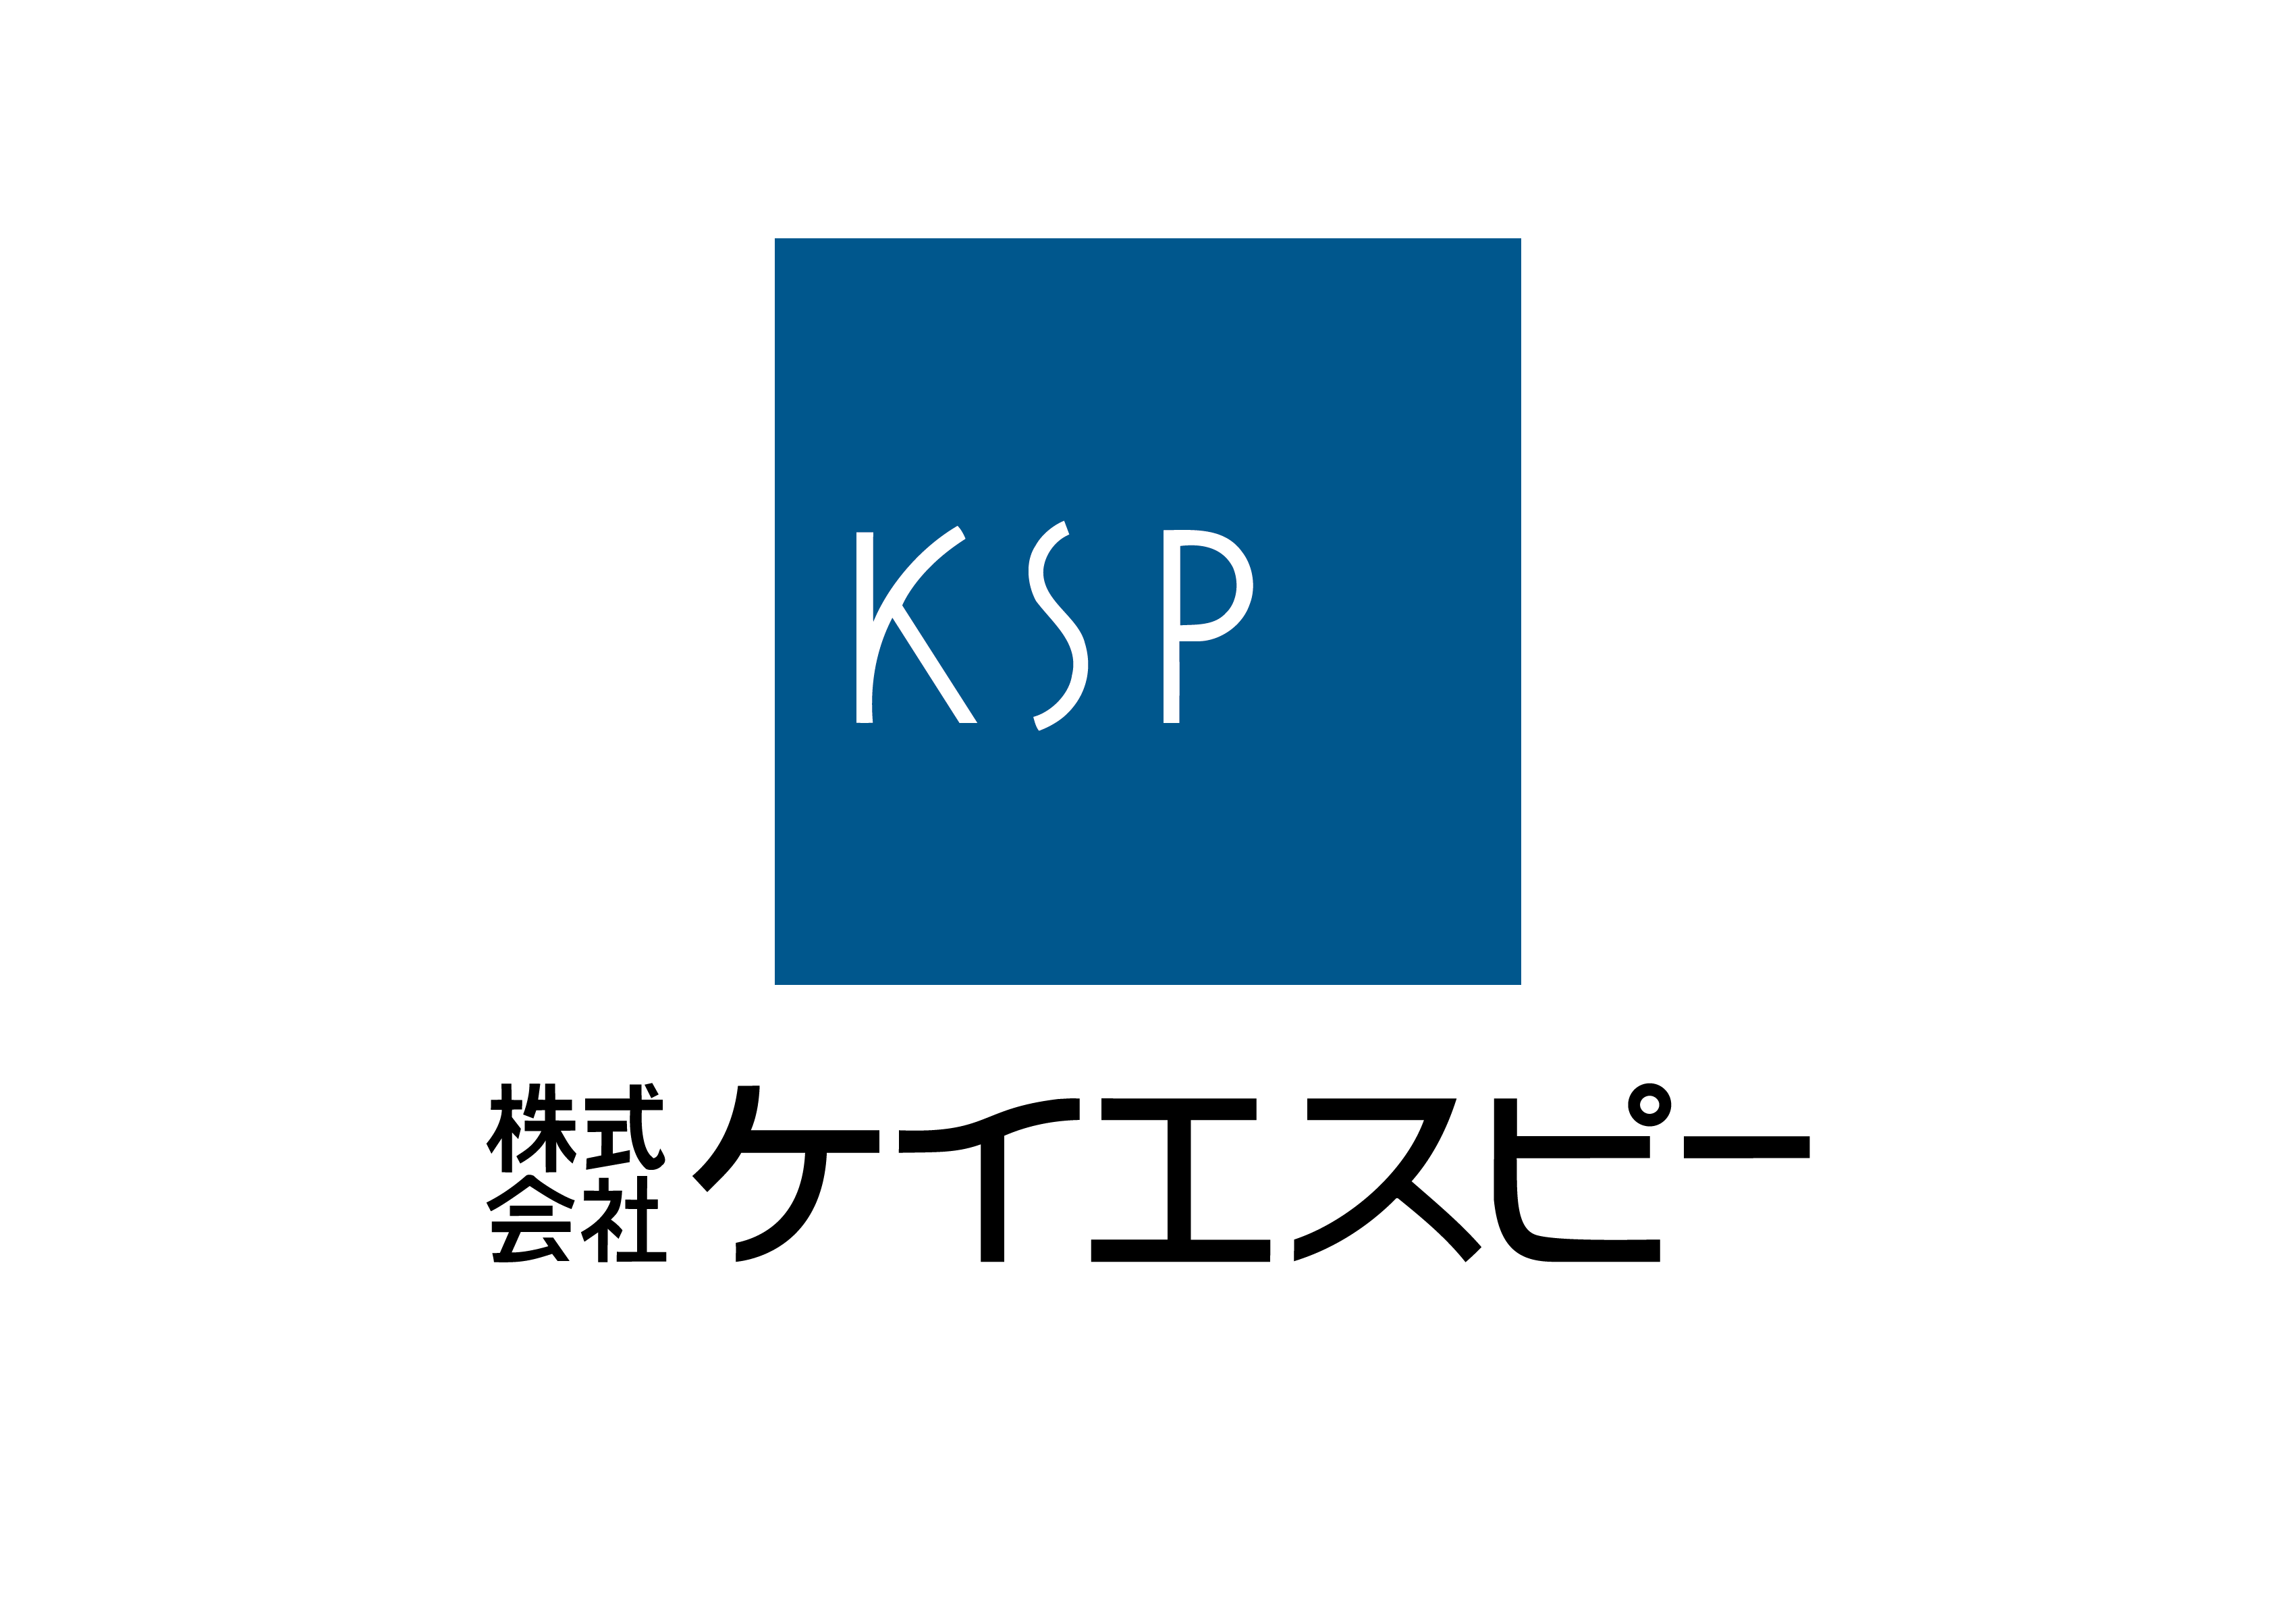 ksp_co_logo_type2.png